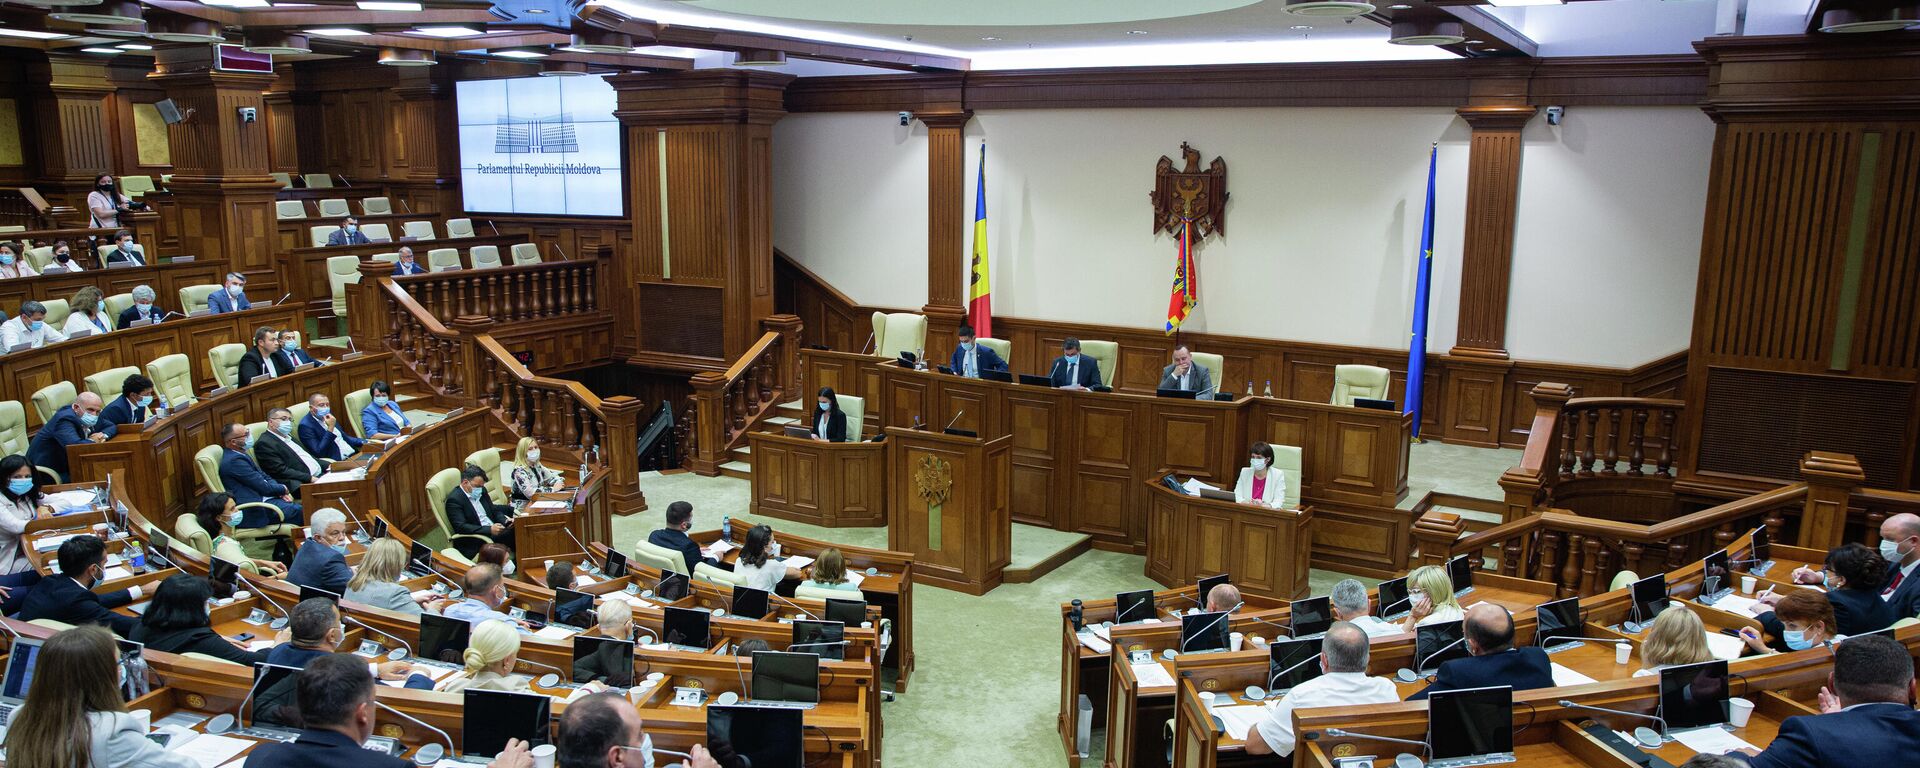 Deputați în Parlamentul Republicii Moldova  - Sputnik Moldova, 1920, 17.08.2021